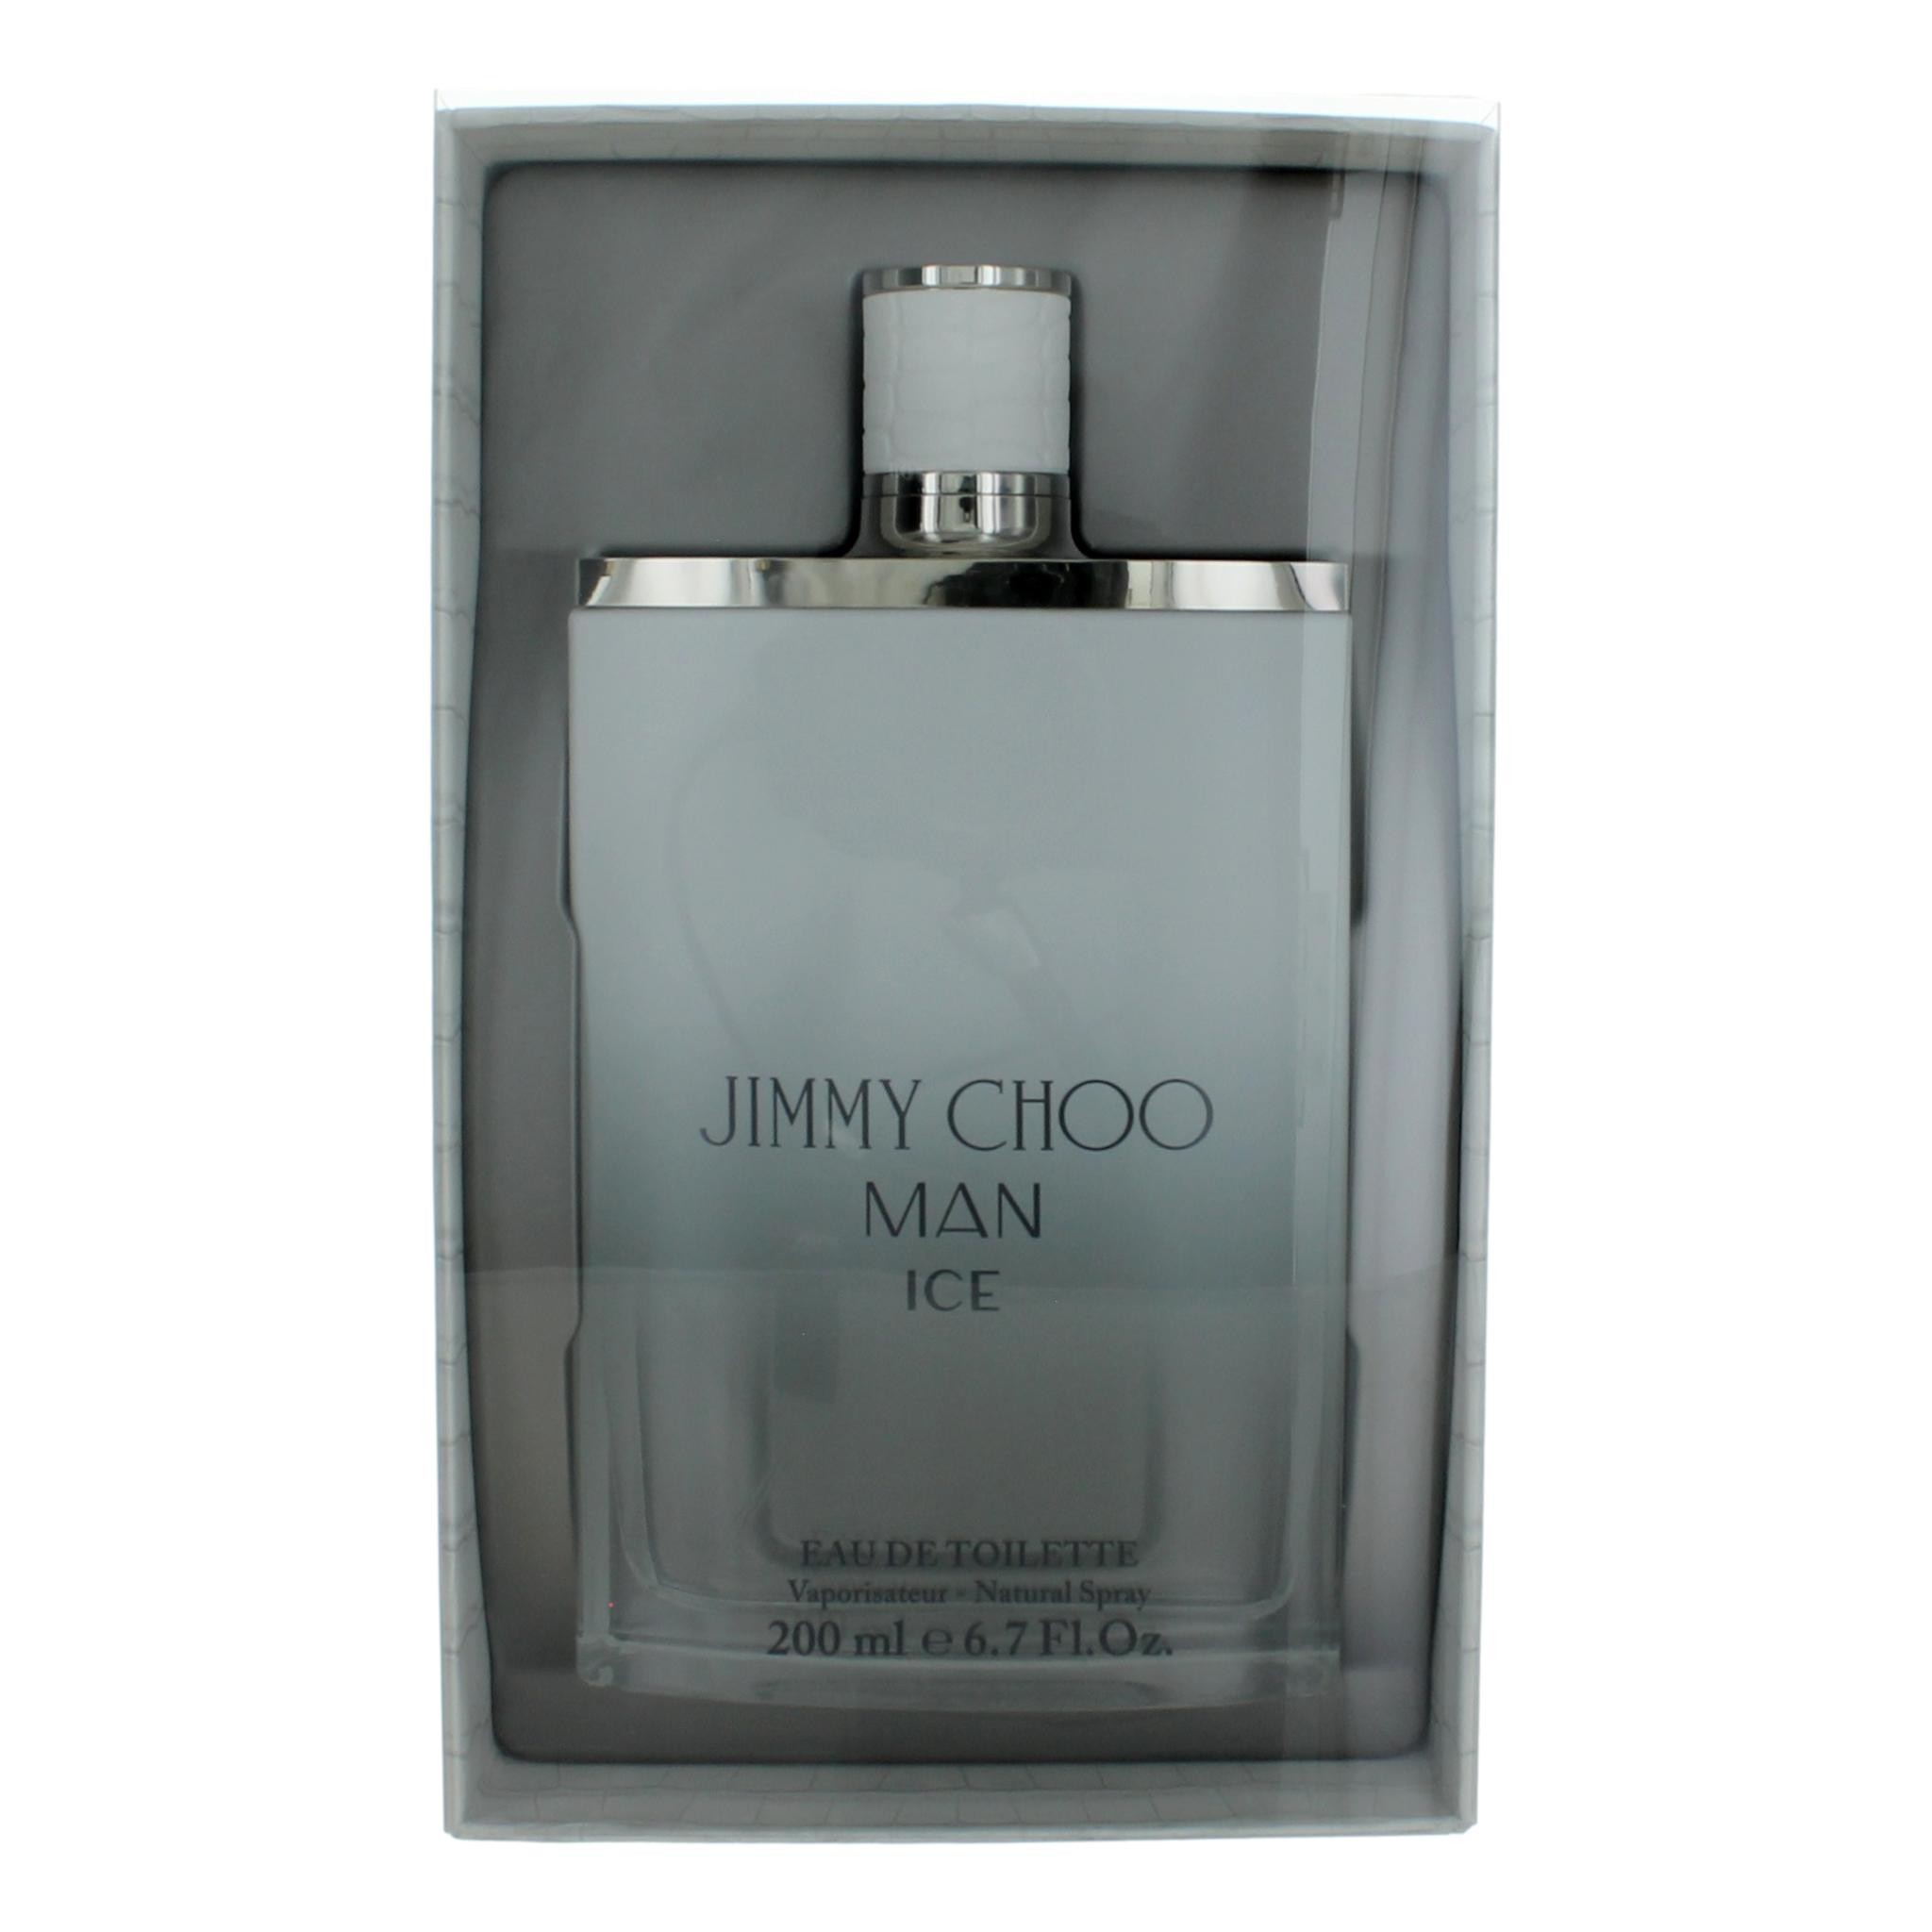 Jimmy Choo Man Ice by Jimmy Choo 6.7 oz Eau De Toilette Spray for Men